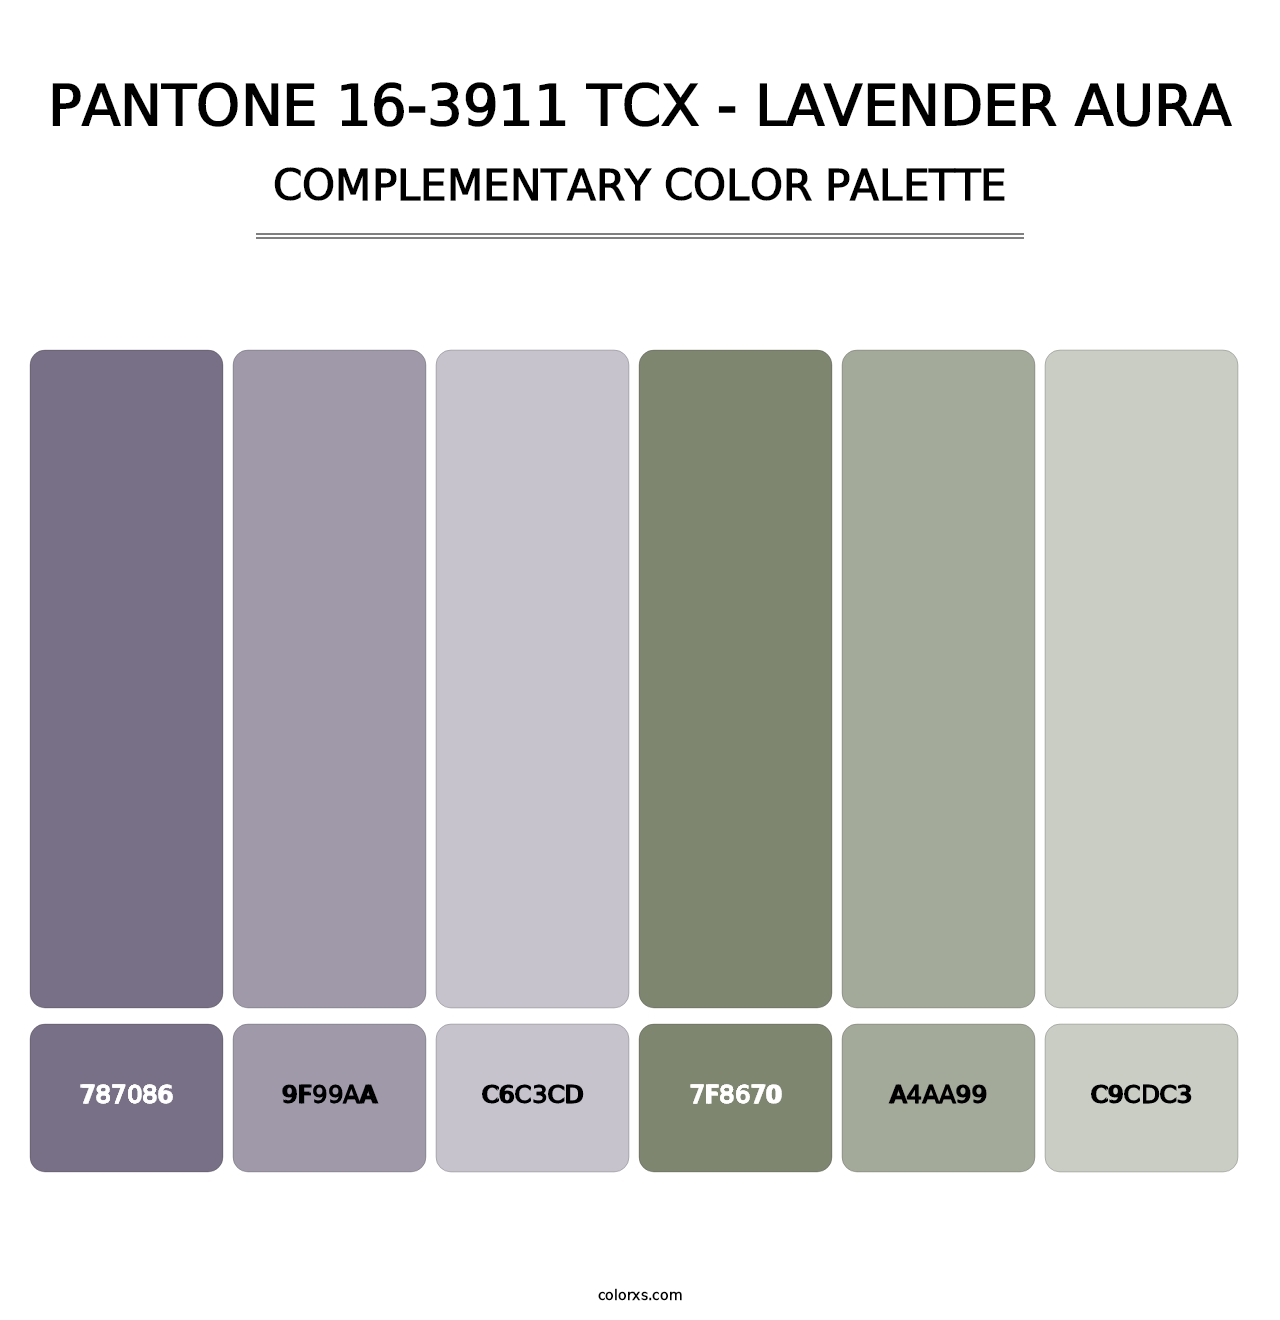 PANTONE 16-3911 TCX - Lavender Aura - Complementary Color Palette